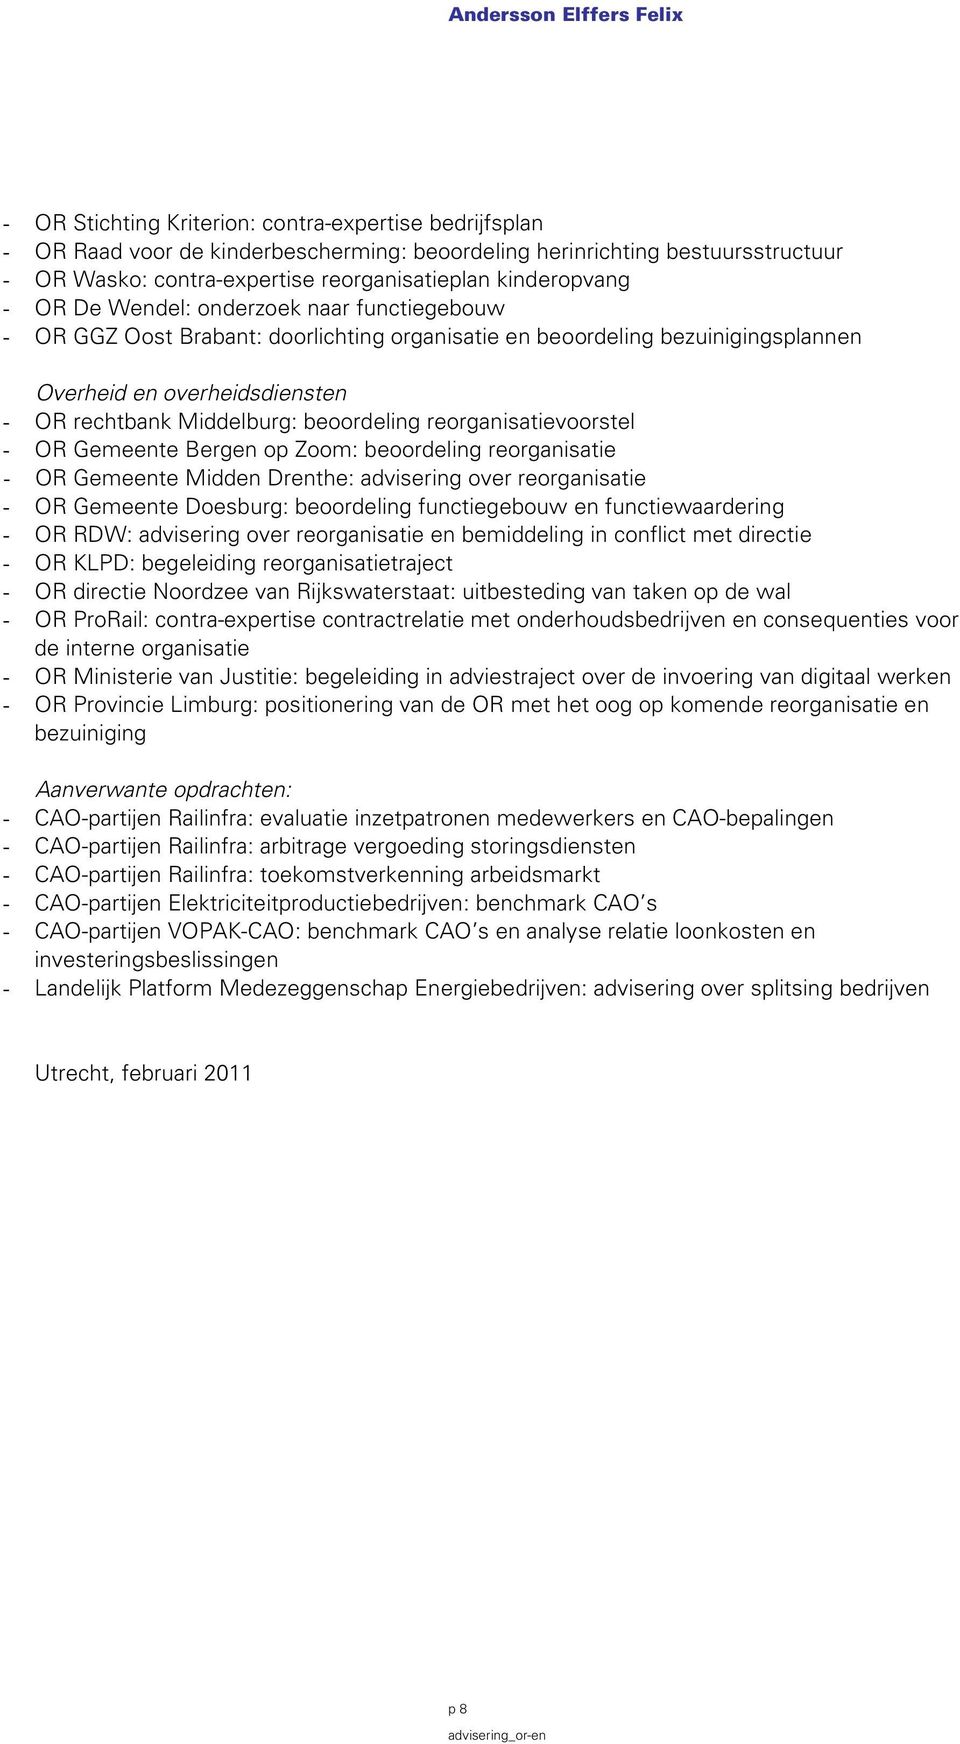 reorganisatievoorstel - OR Gemeente Bergen op Zoom: beoordeling reorganisatie - OR Gemeente Midden Drenthe: advisering over reorganisatie - OR Gemeente Doesburg: beoordeling functiegebouw en